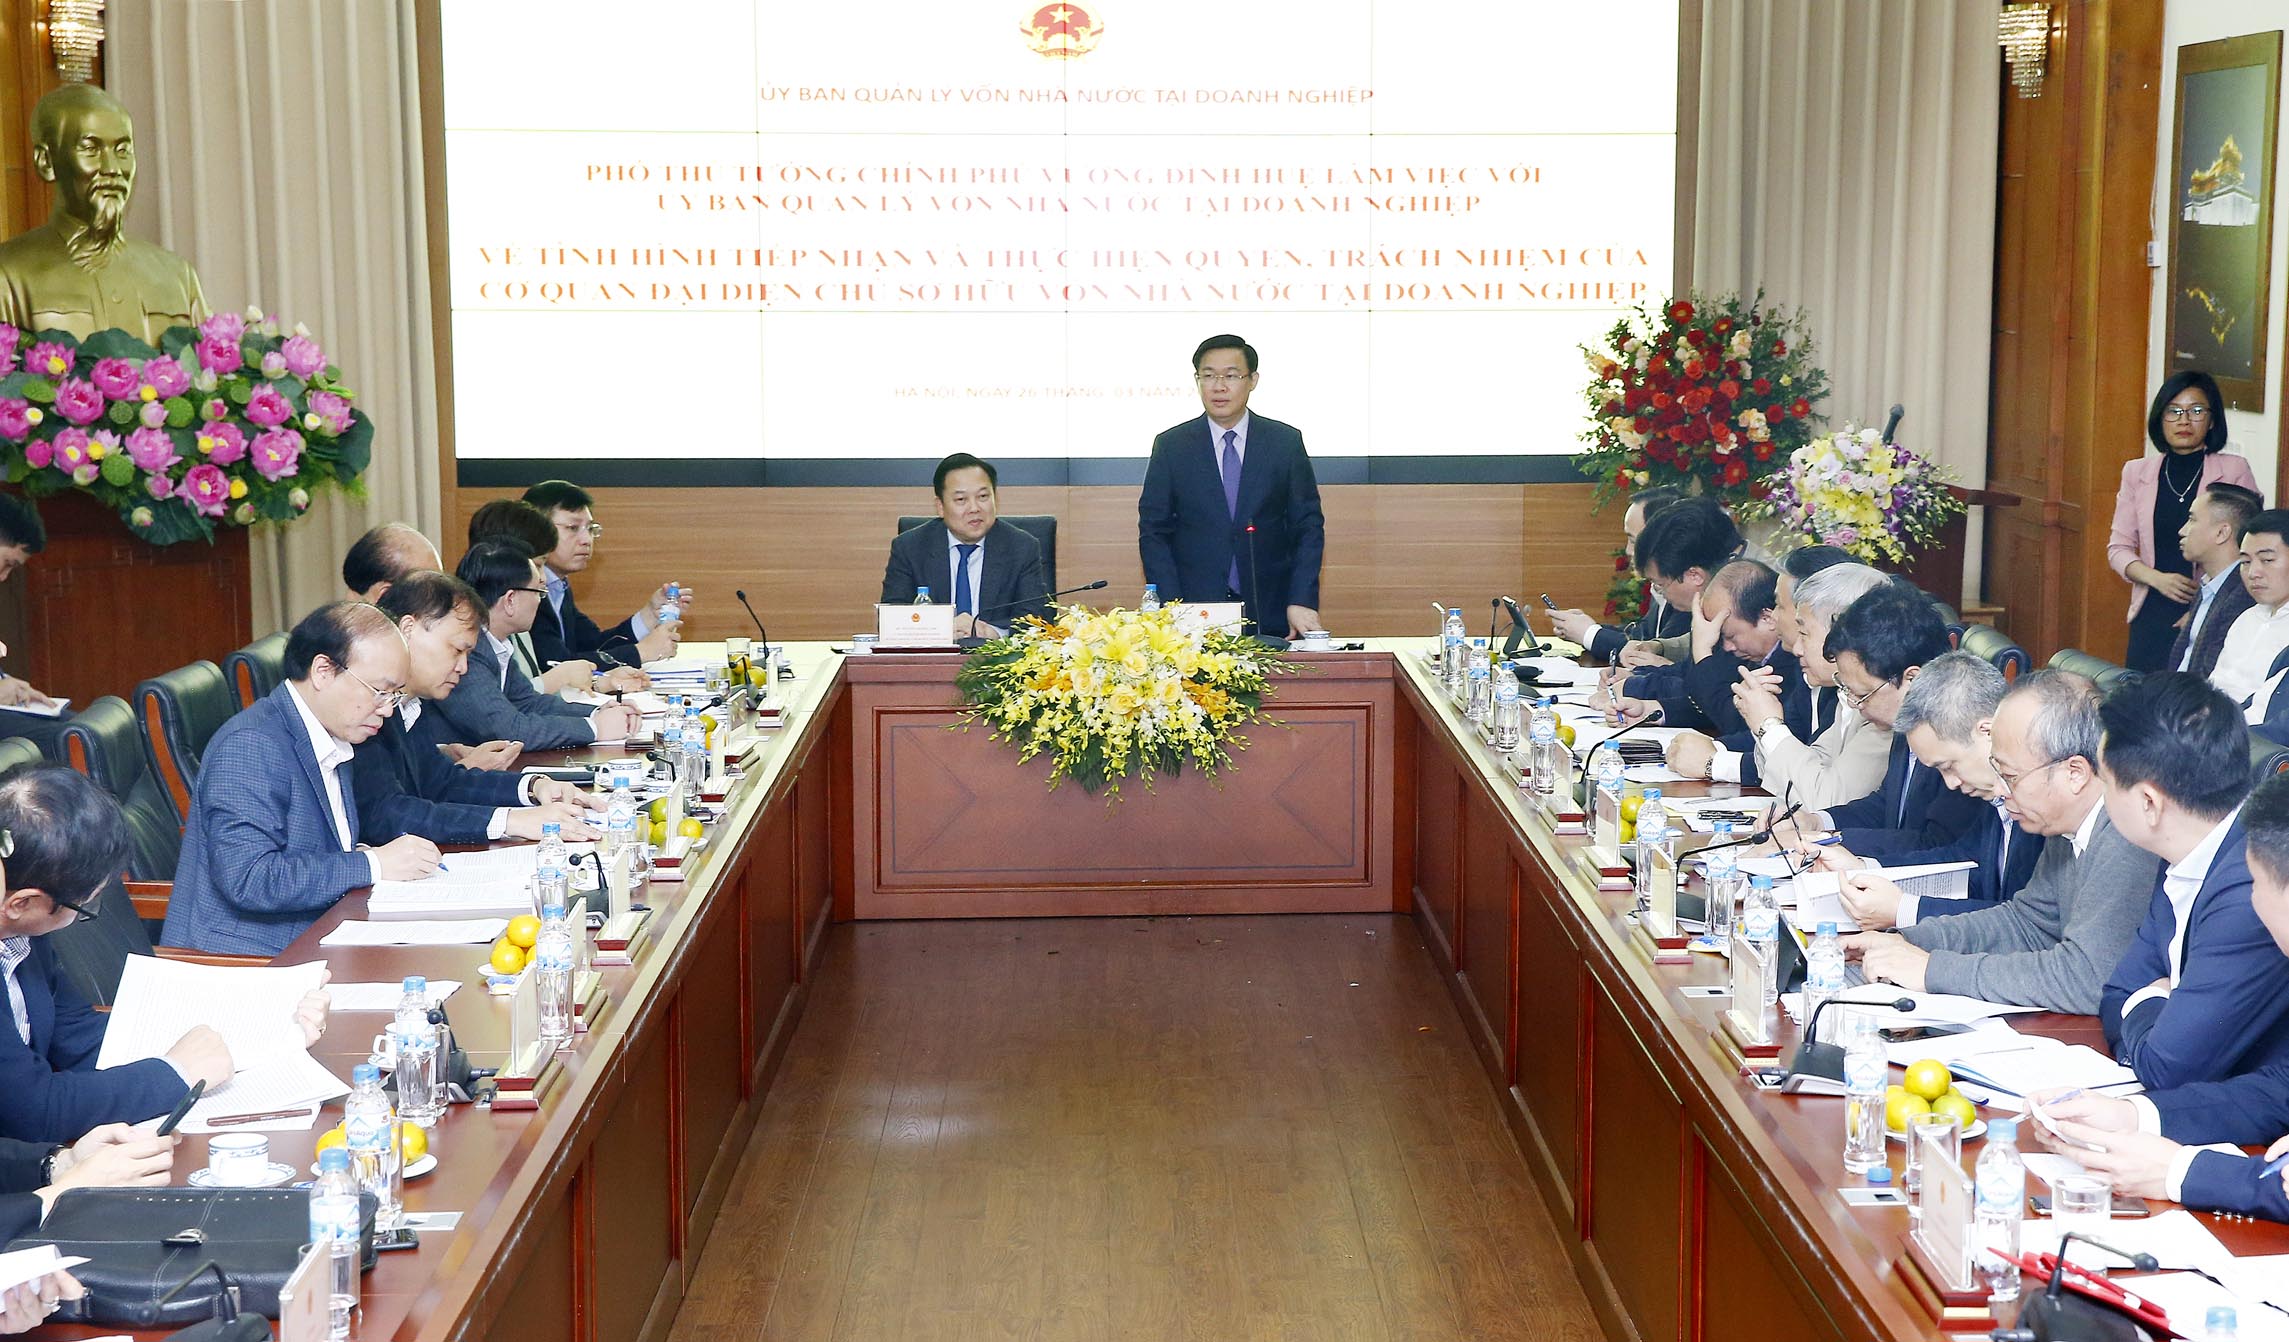 Phó Thủ tướng Vương Đình Huệ phát biểu tại cuộc họp (Ảnh: VGP/Thành Chung)